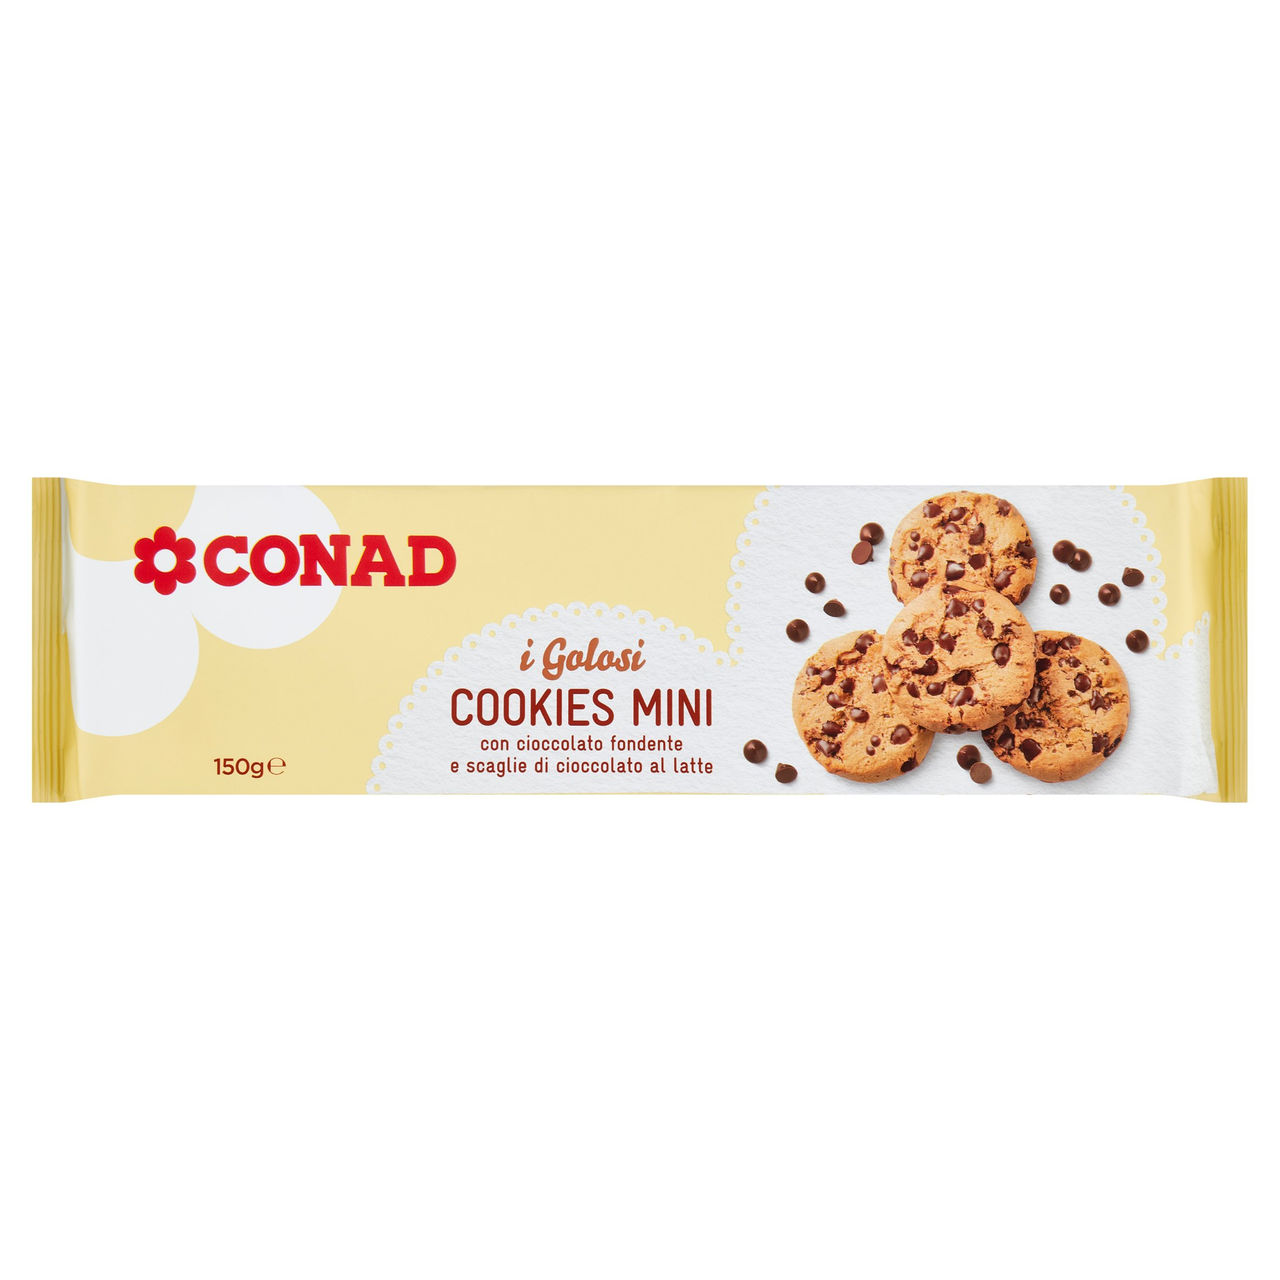 Cookies mini 150 g Conad in vendita online